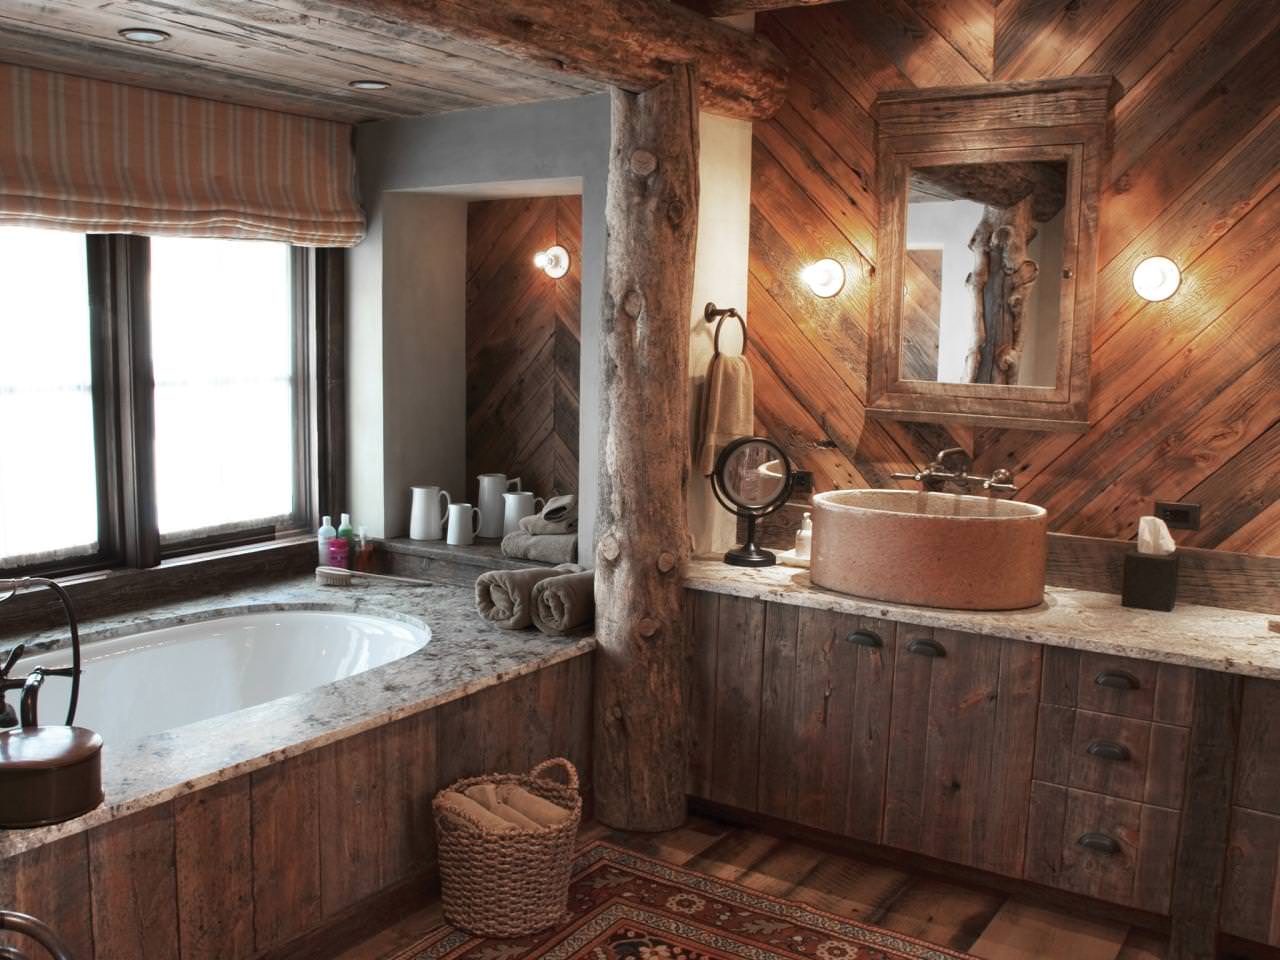 Badezimmereinrichtung in einem Holzhaus im Landhausstil